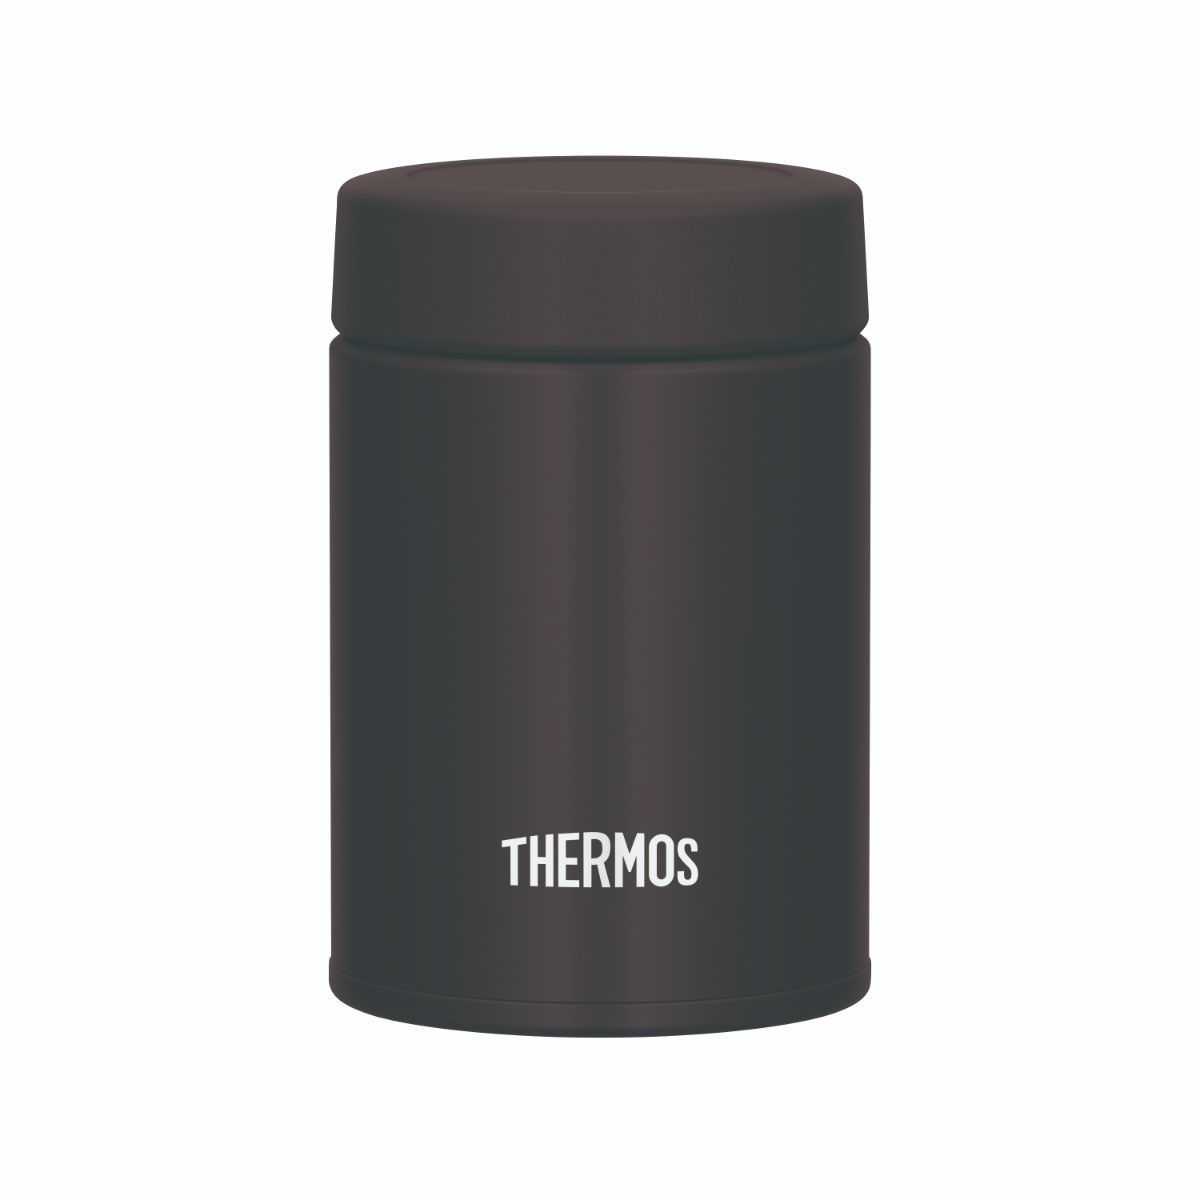 THERMOS 真空断熱スープジャー ダークブラウン 0.2L ランチ 保温 保冷